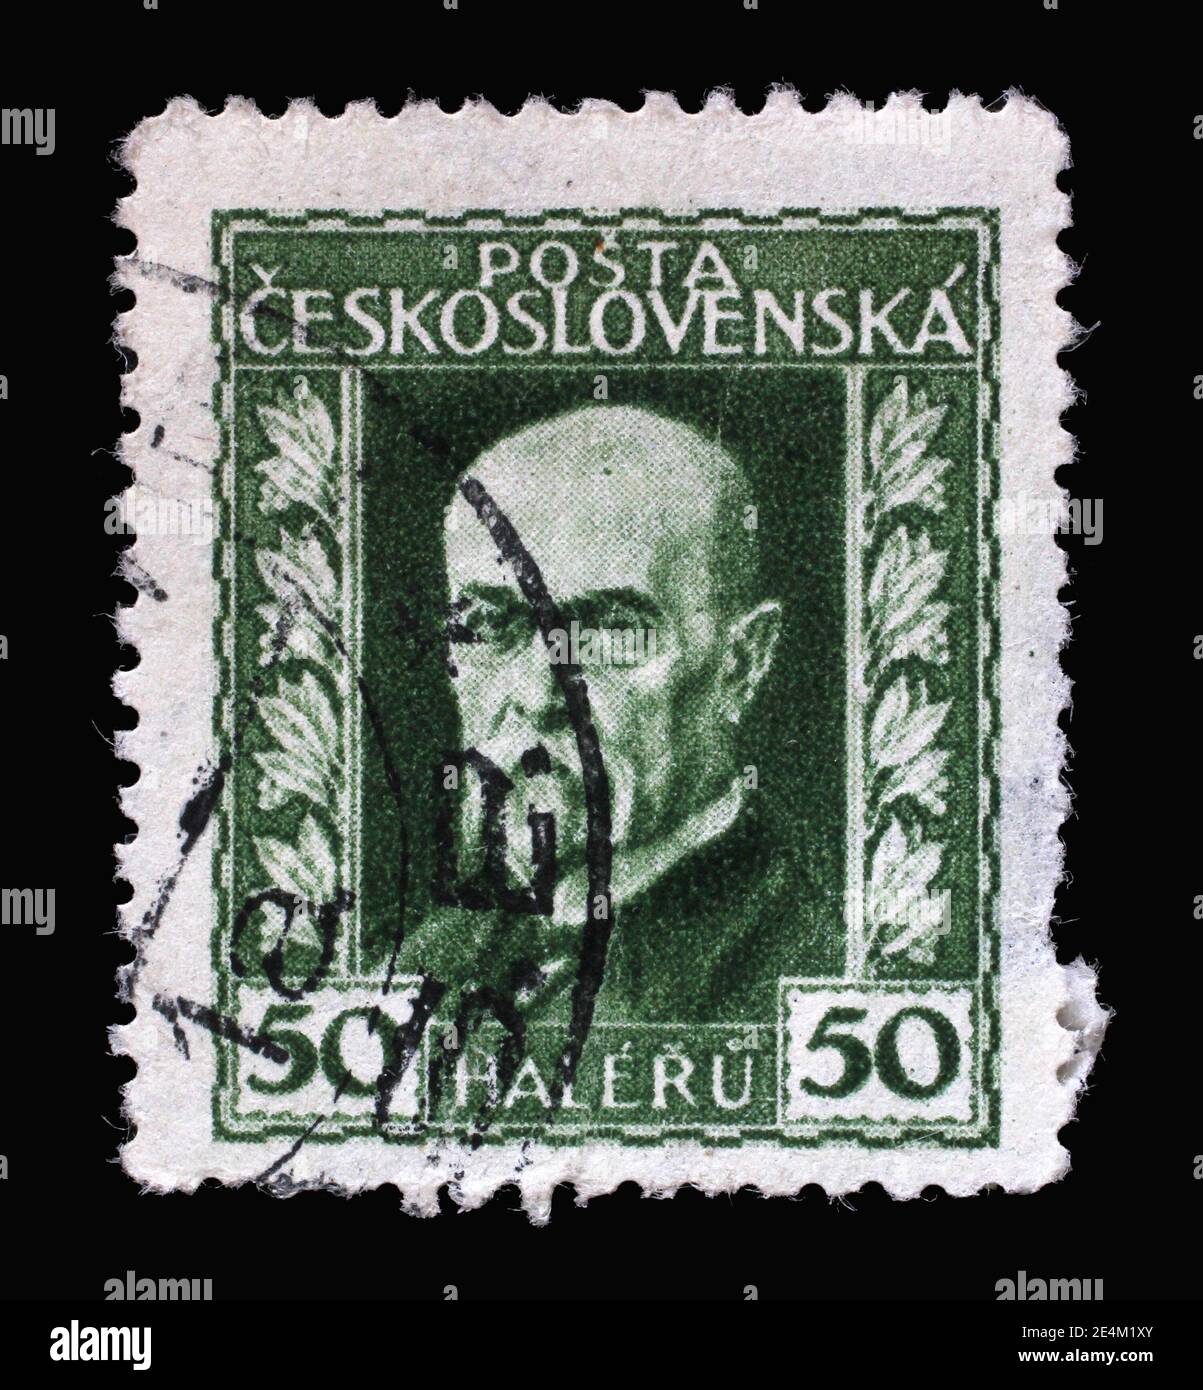 Die in der Tschechoslowakei gedruckte Briefmarke zeigt den ersten Präsidenten der Tschechoslowakei - Thomas Garrigue Masaryk, um 1925 Stockfoto